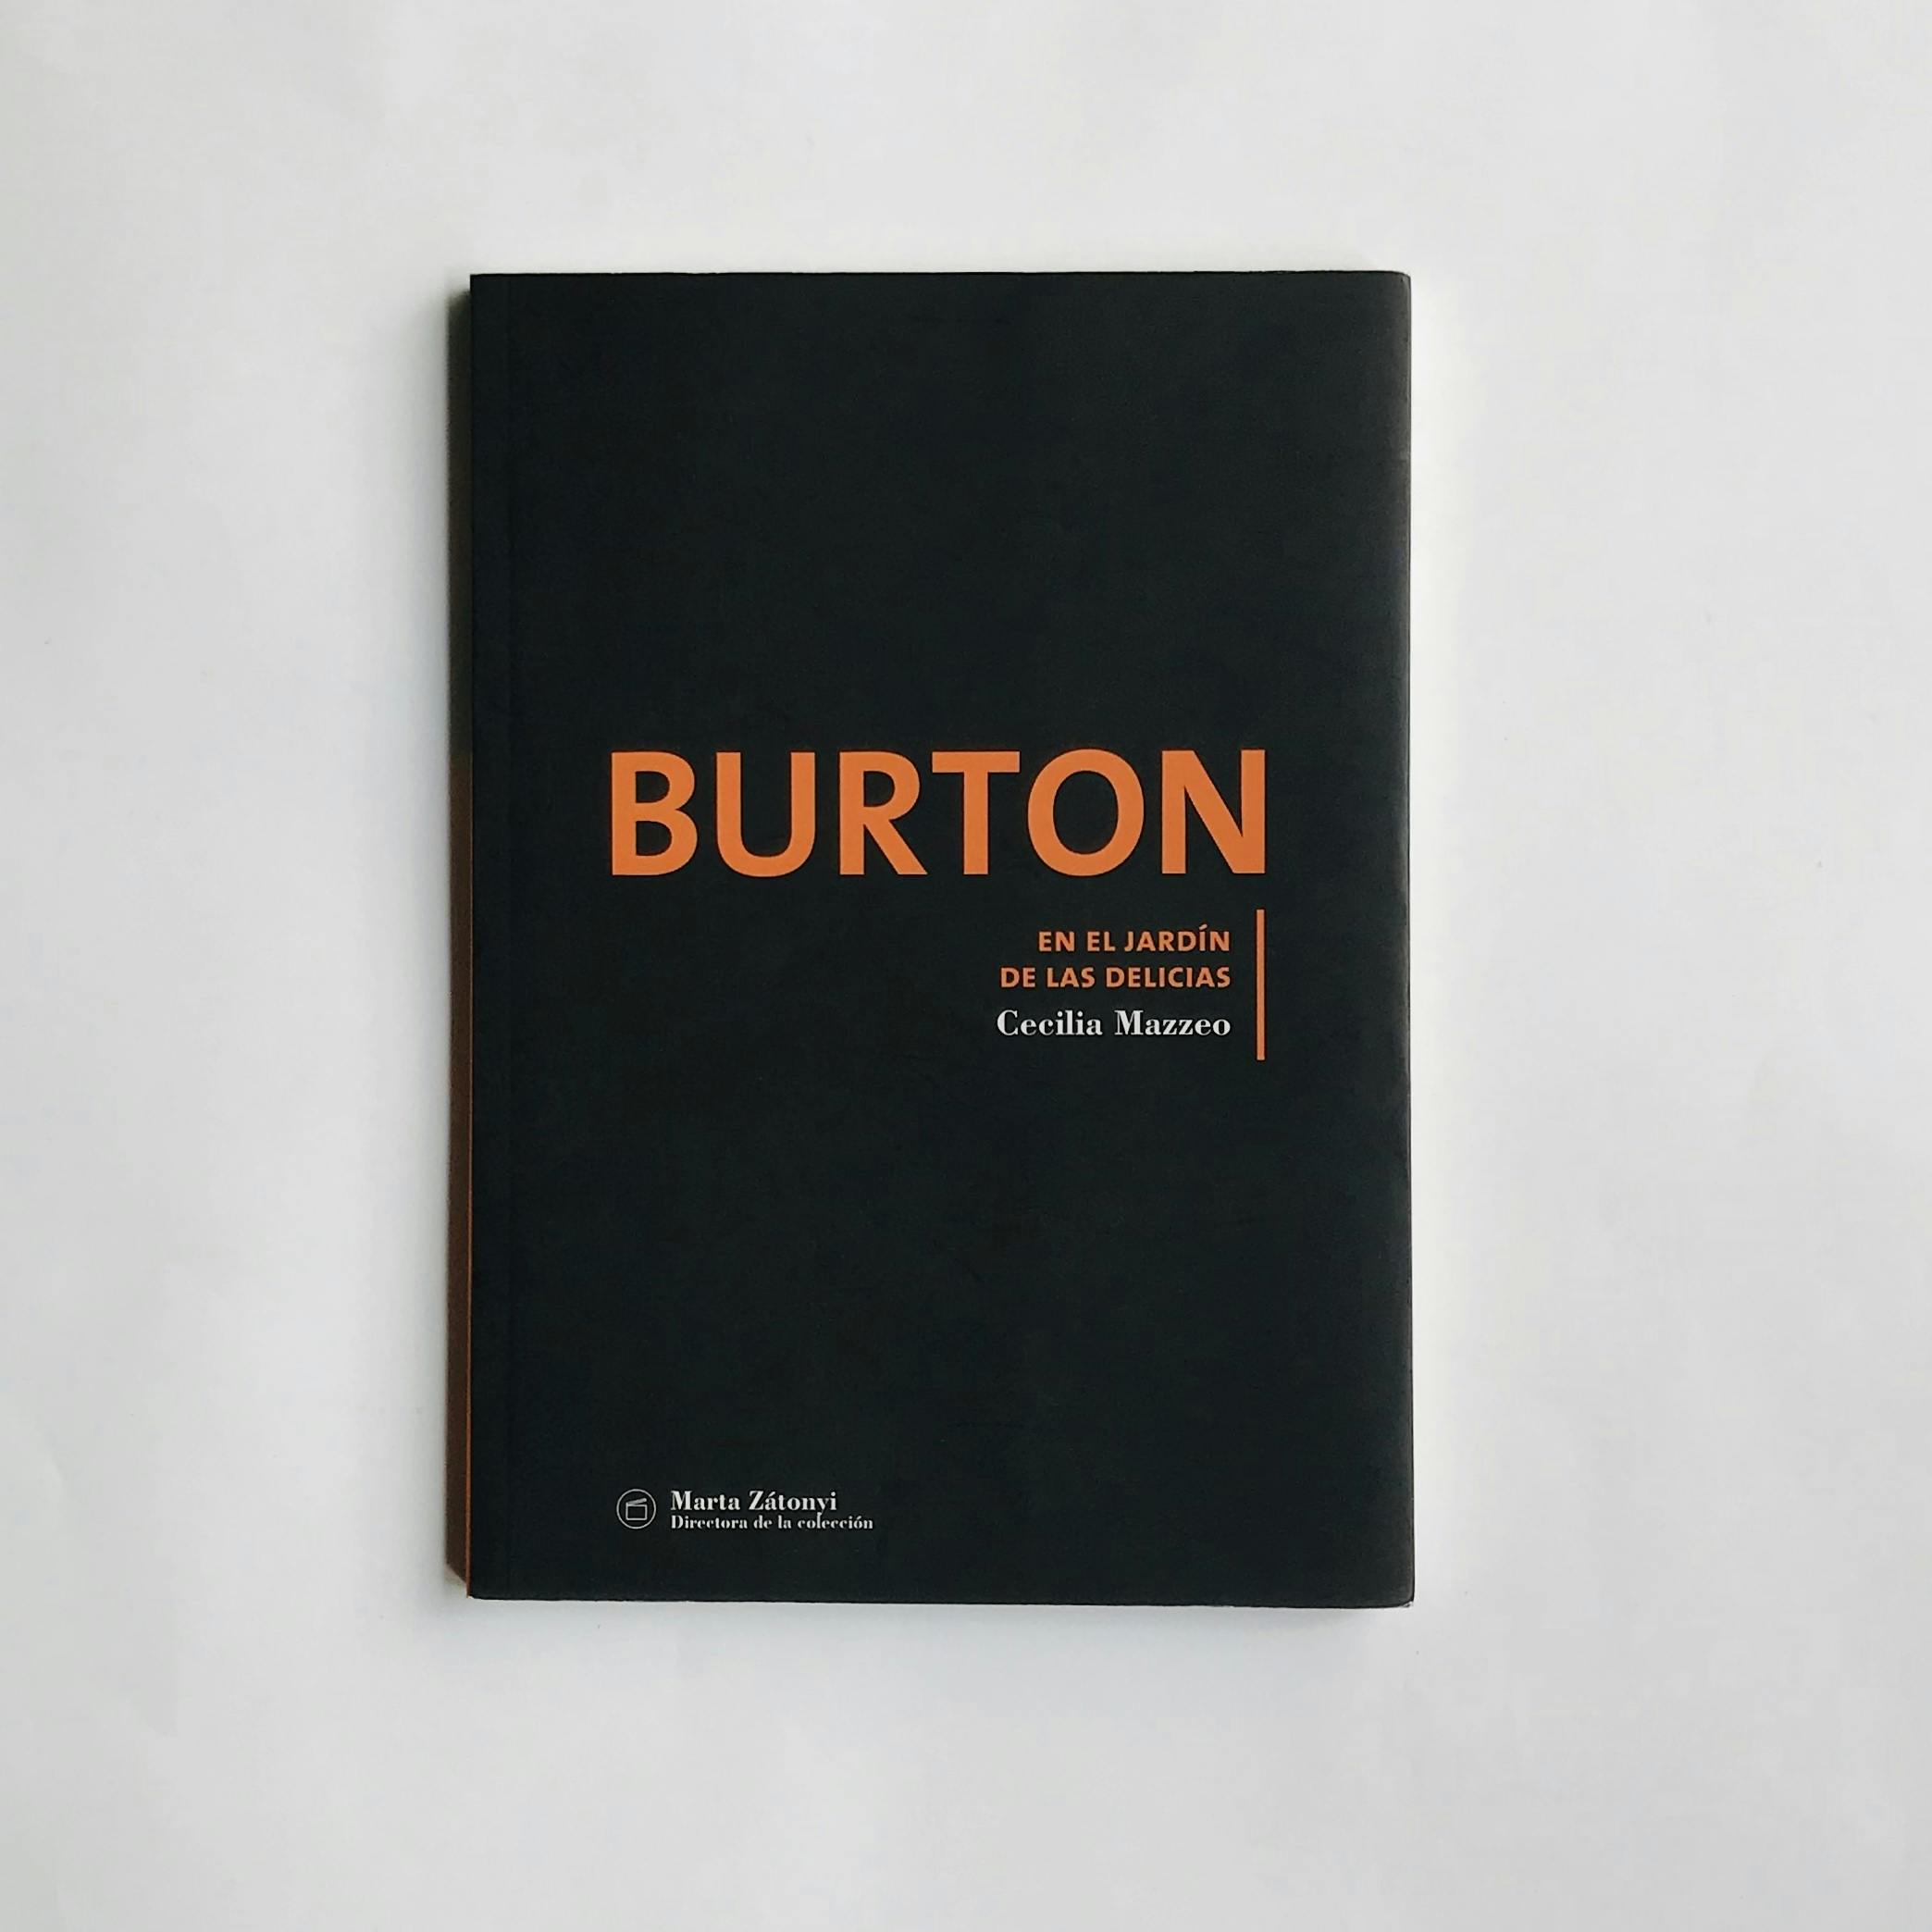 "BURTON. EN EL JARDÍN DE LAS DELICIAS"